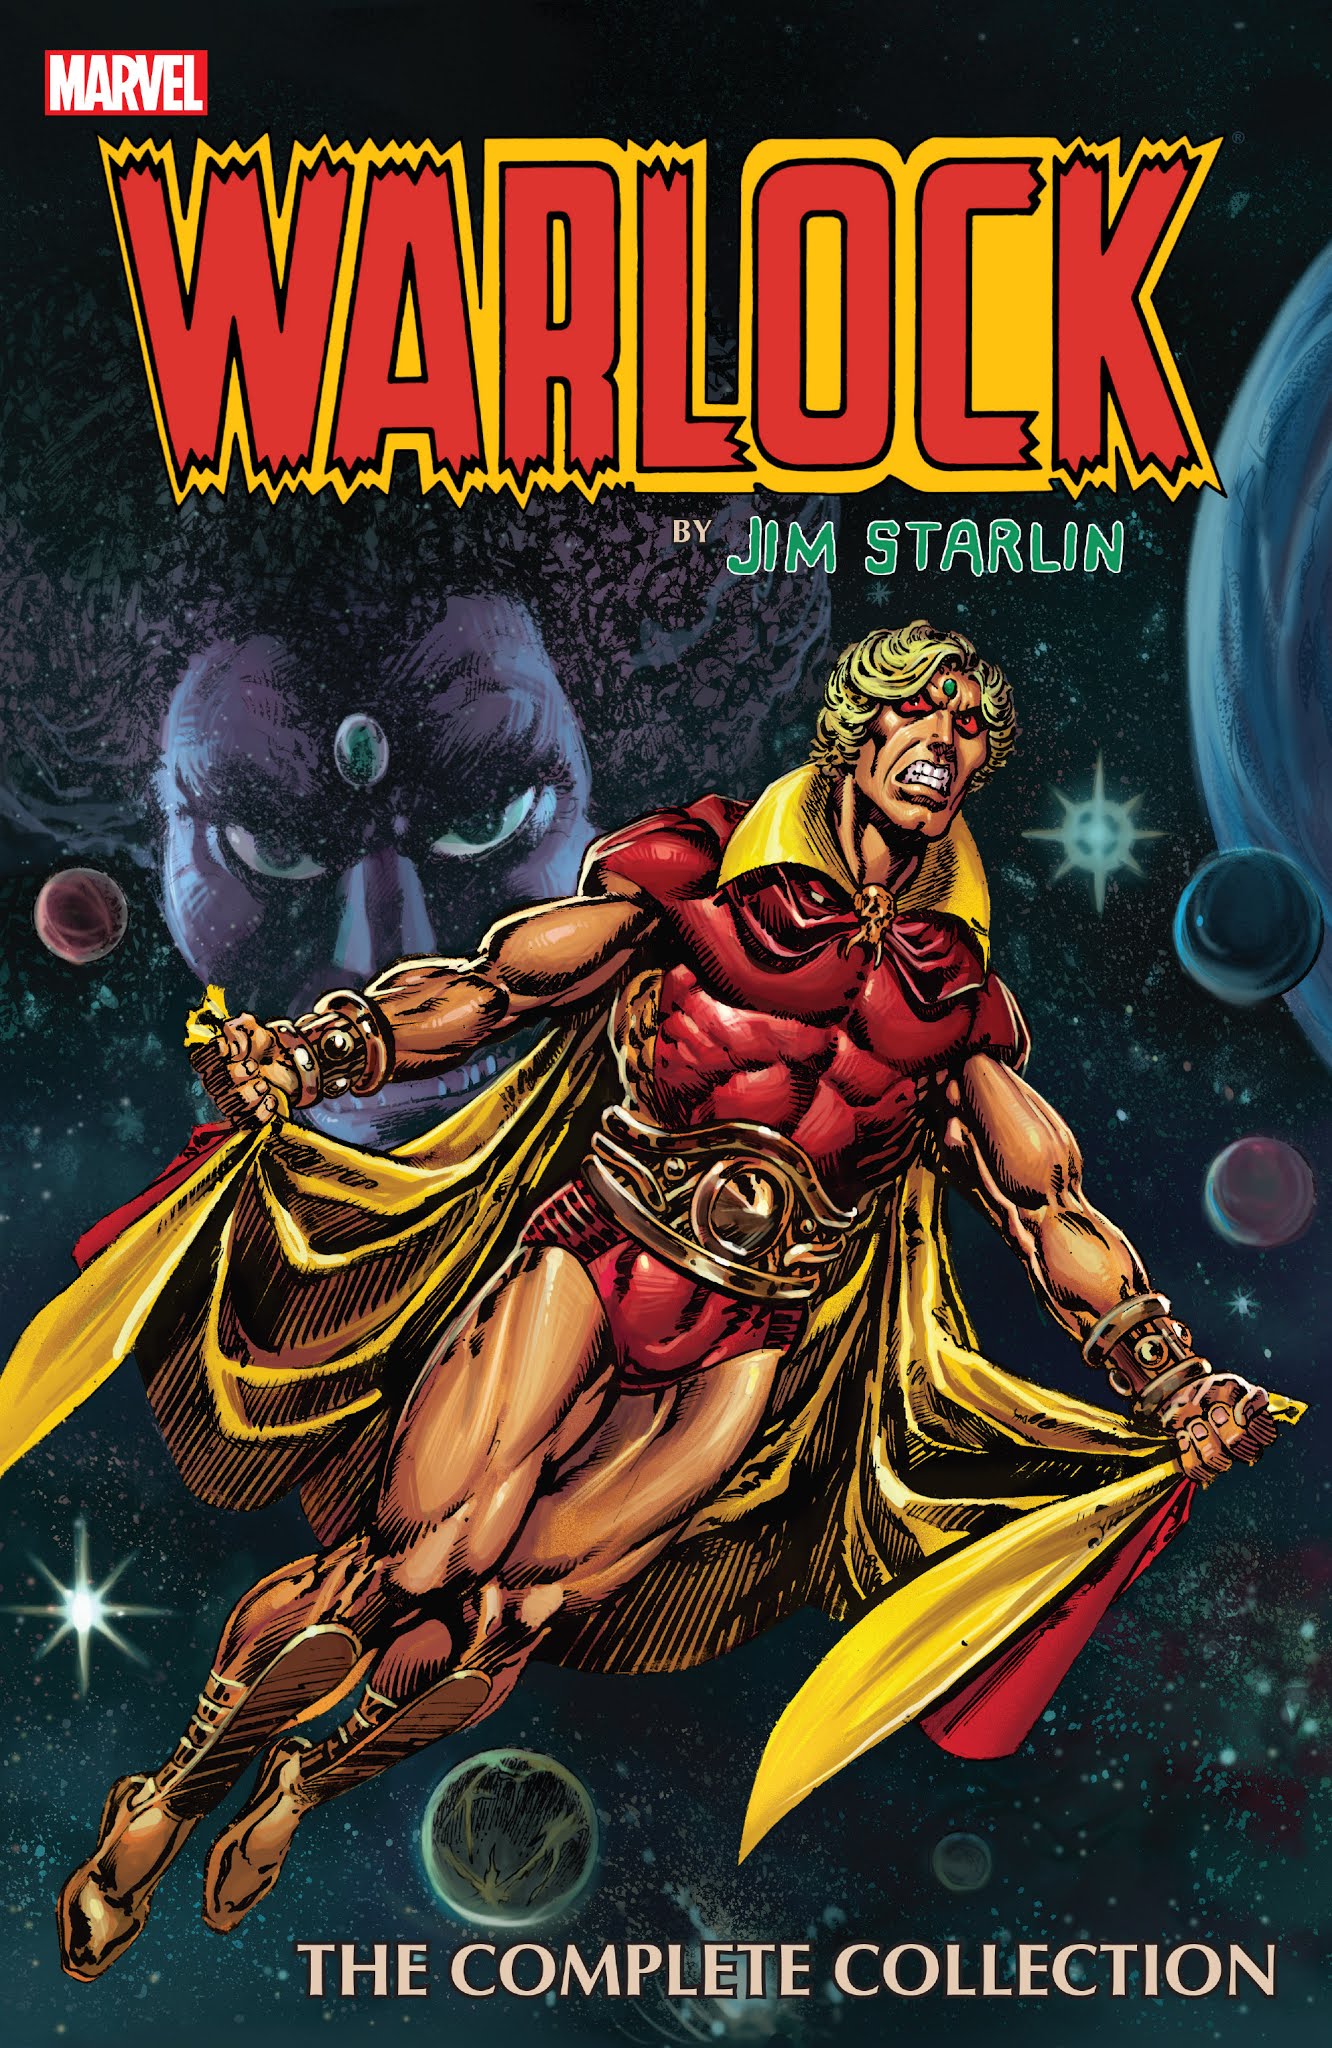 Read online Warlock by Jim Starlin comic -  Issue # TPB (Part 1) - 1